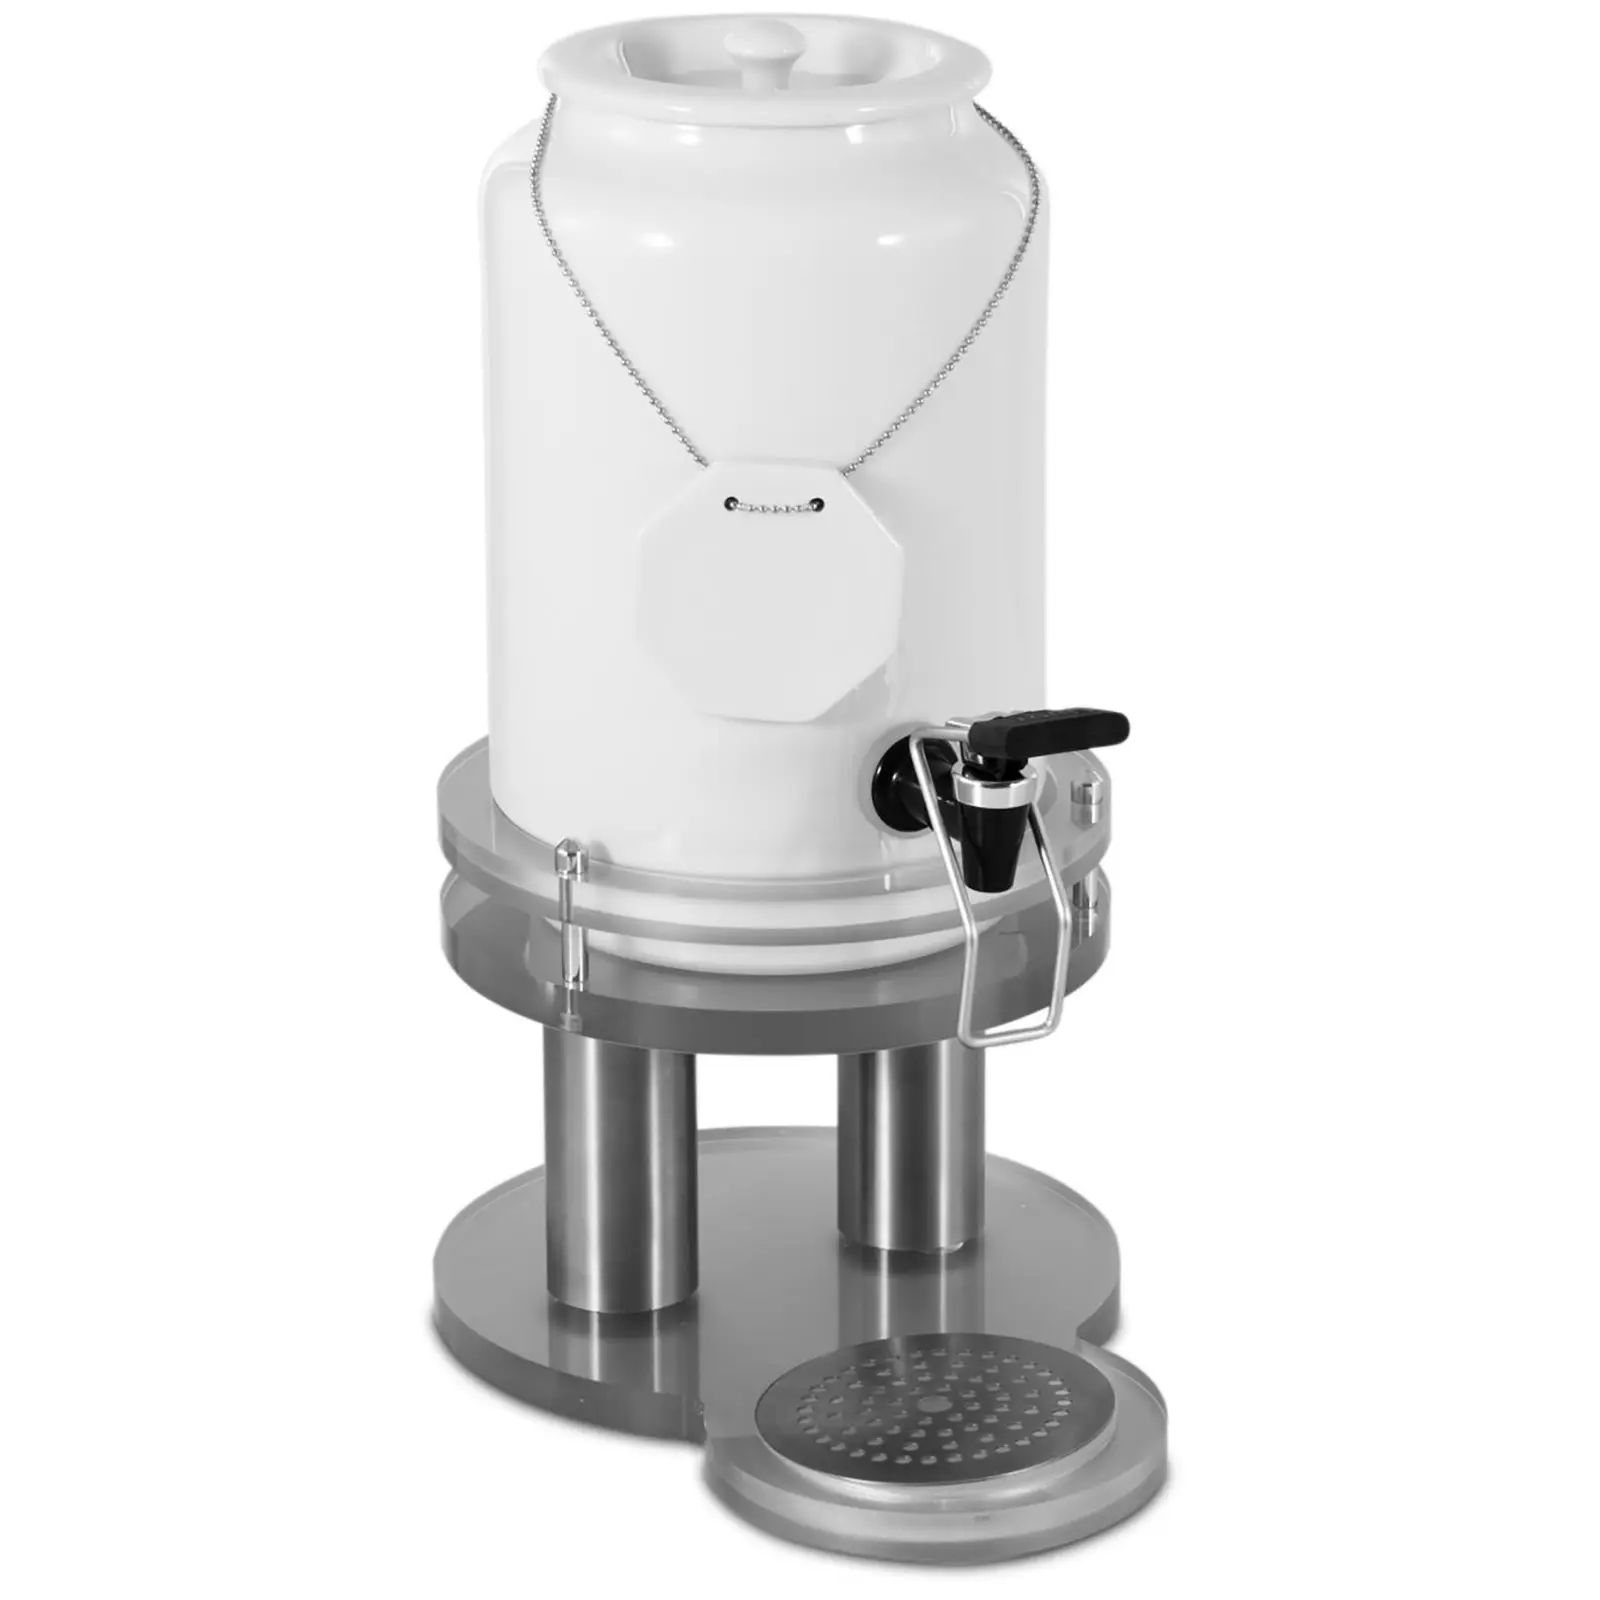 Milk Dispenser - Stainless steel, porcelain, acrylic - 4 L